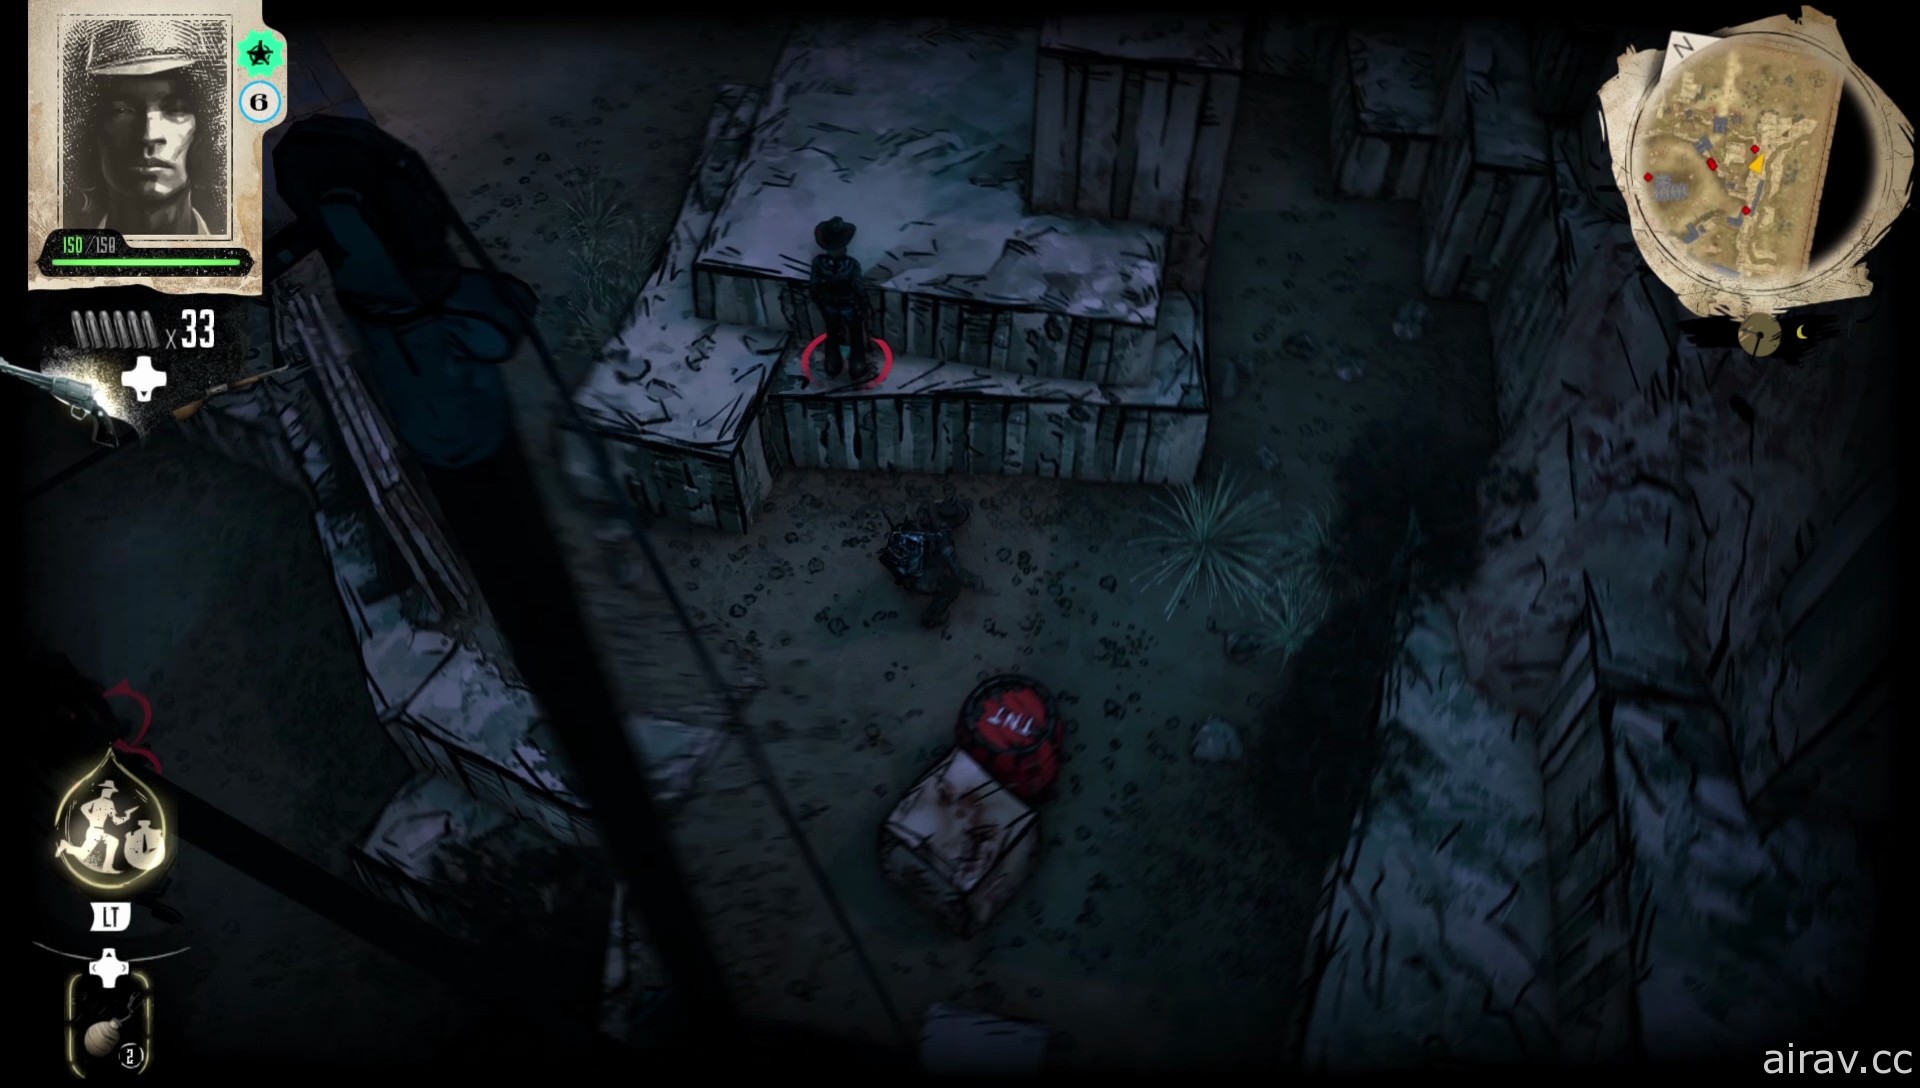 《詭野西部》揭露遊戲特色介紹資訊 結合西部題材與黑暗奇幻風格